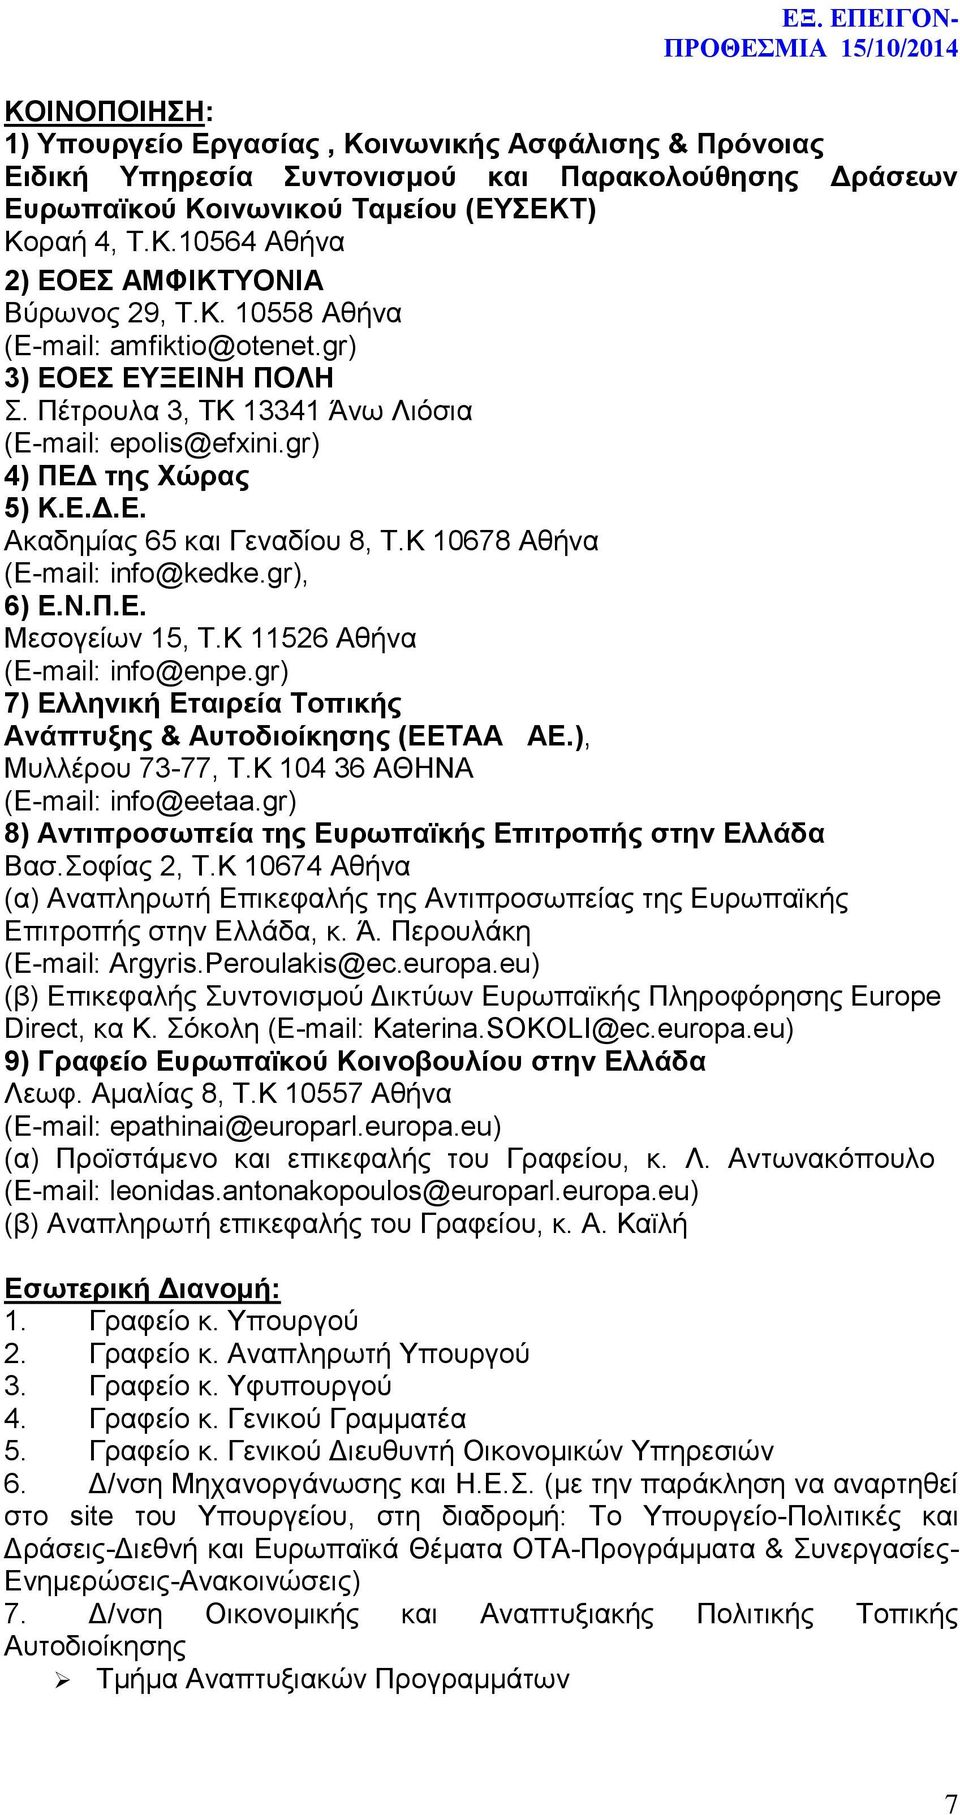 Κ 10678 Αθήνα (E-mail: info@kedke.gr), 6) Ε.Ν.Π.Ε. Μεσογείων 15, Τ.Κ 11526 Αθήνα (E-mail: info@enpe.gr) 7) Ελληνική Εταιρεία Τοπικής Ανάπτυξης & Αυτοδιοίκησης (ΕΕΤΑΑ ΑΕ.), Μυλλέρου 73-77, Τ.